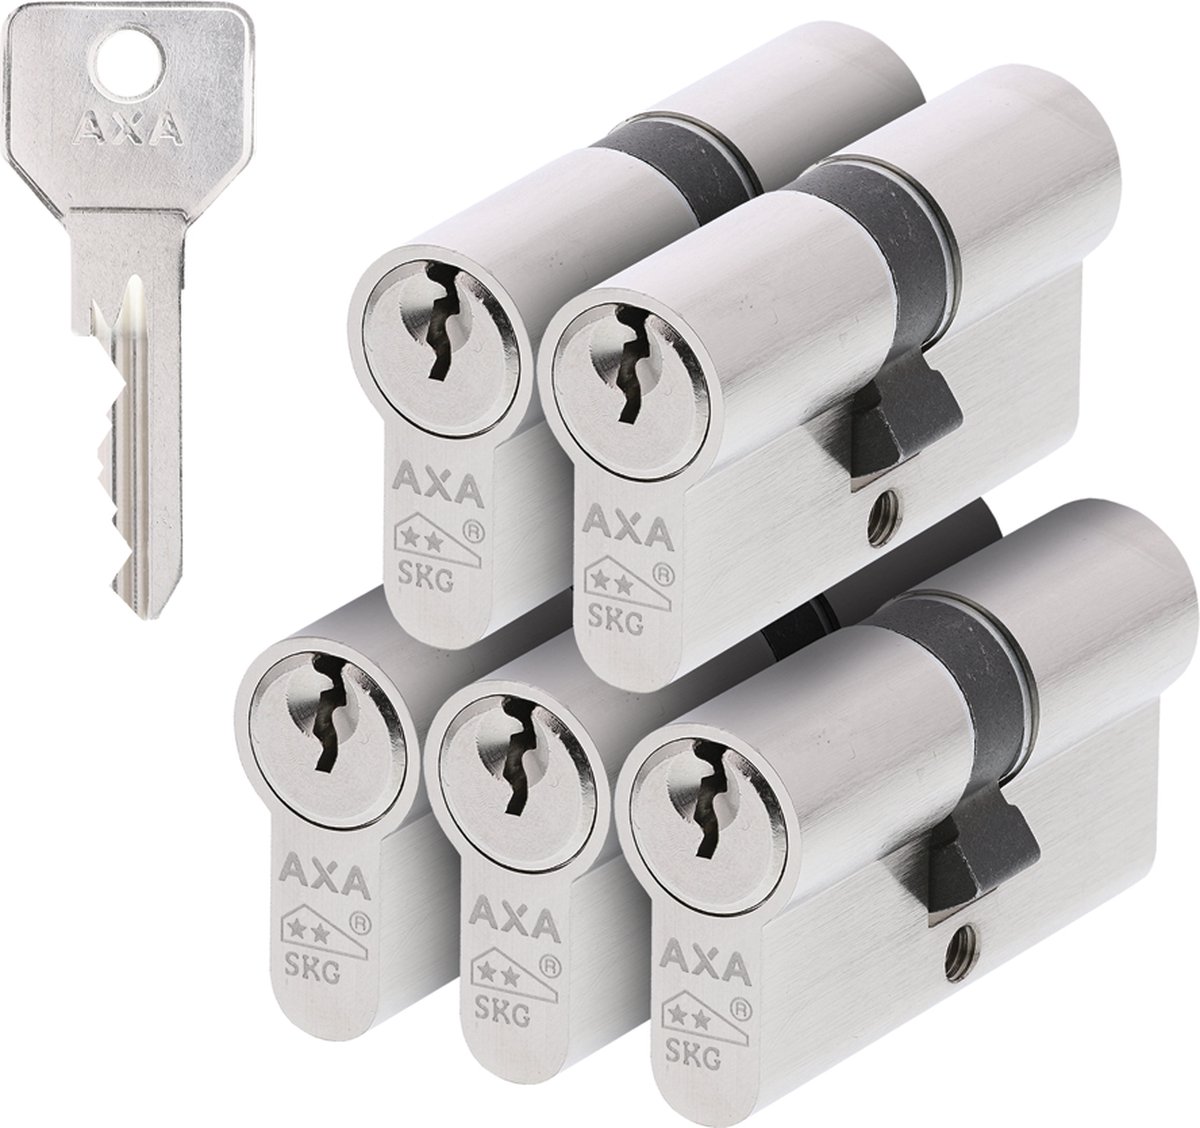 AXA Cilinders Security SKG** per 5 stuks 30/30 gelijksluitend - Axa